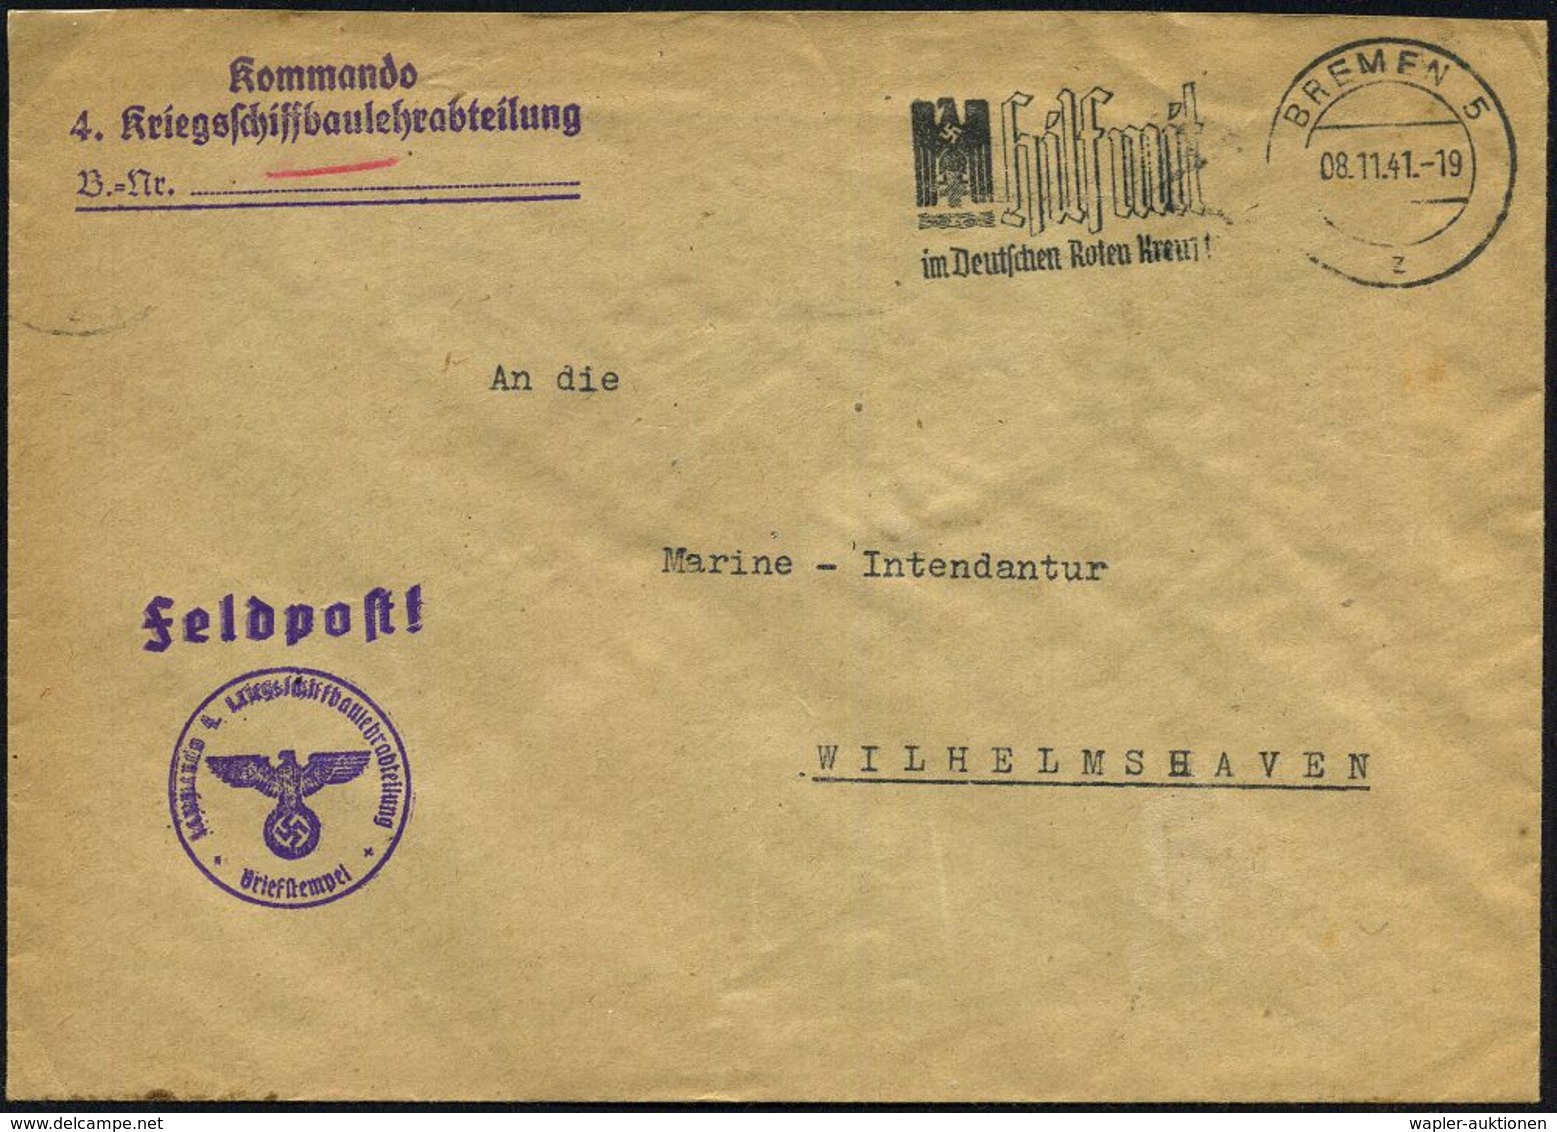 BREMEN 5/ S/ Ein/ Postscheckkonto.. #bzw.# BREMEN 5/ Z/ Hilf Mit/ Im Deutschen Roten Kreuz! 1941 (Nov.) 2 Verschiedene M - Maritiem